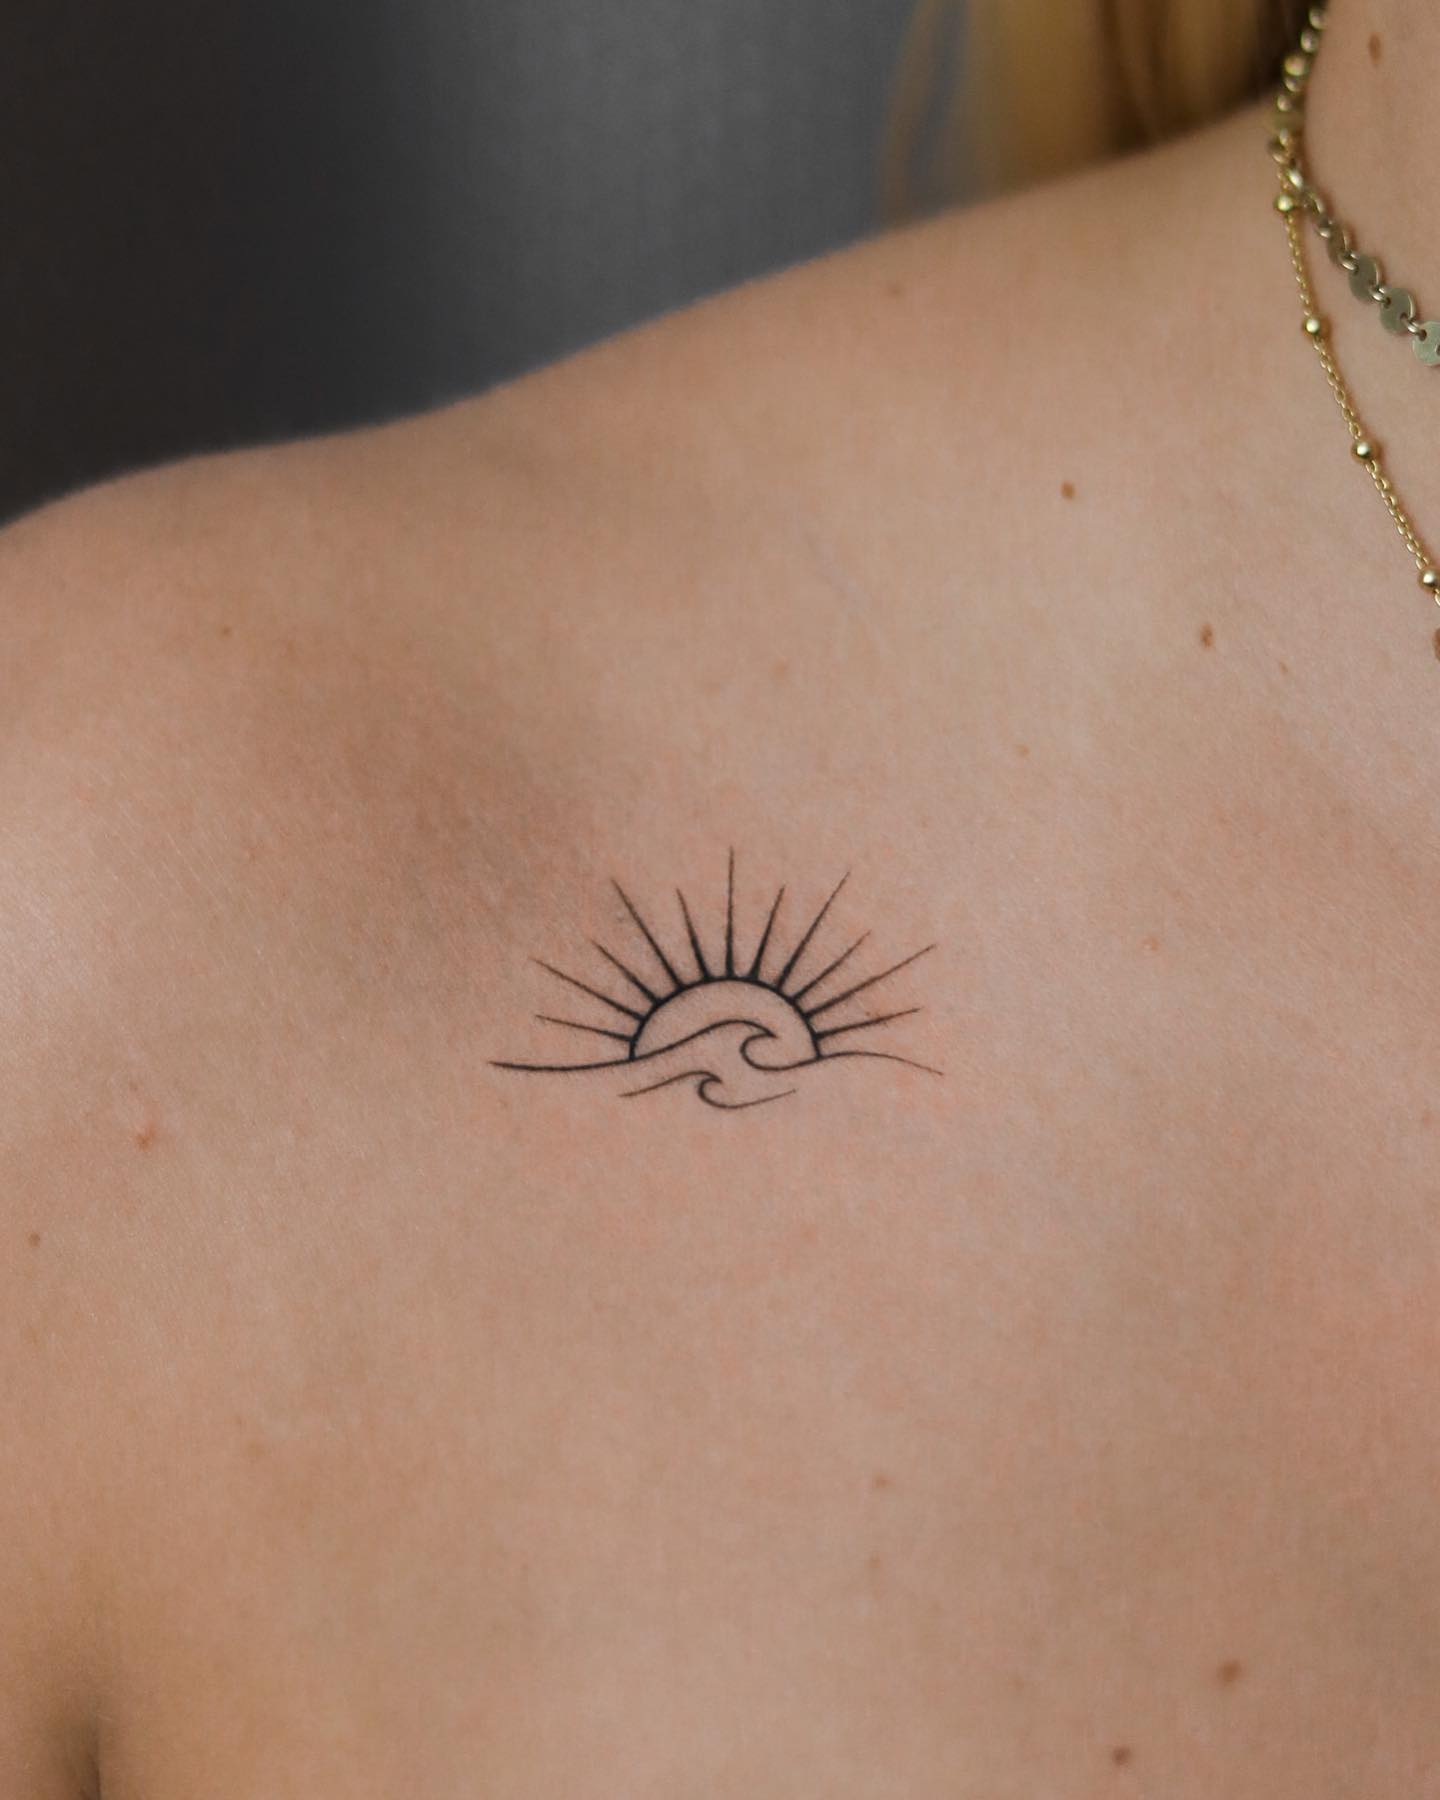 Update More Than Small Sun Tattoo Designs Best Tdesign Edu Vn